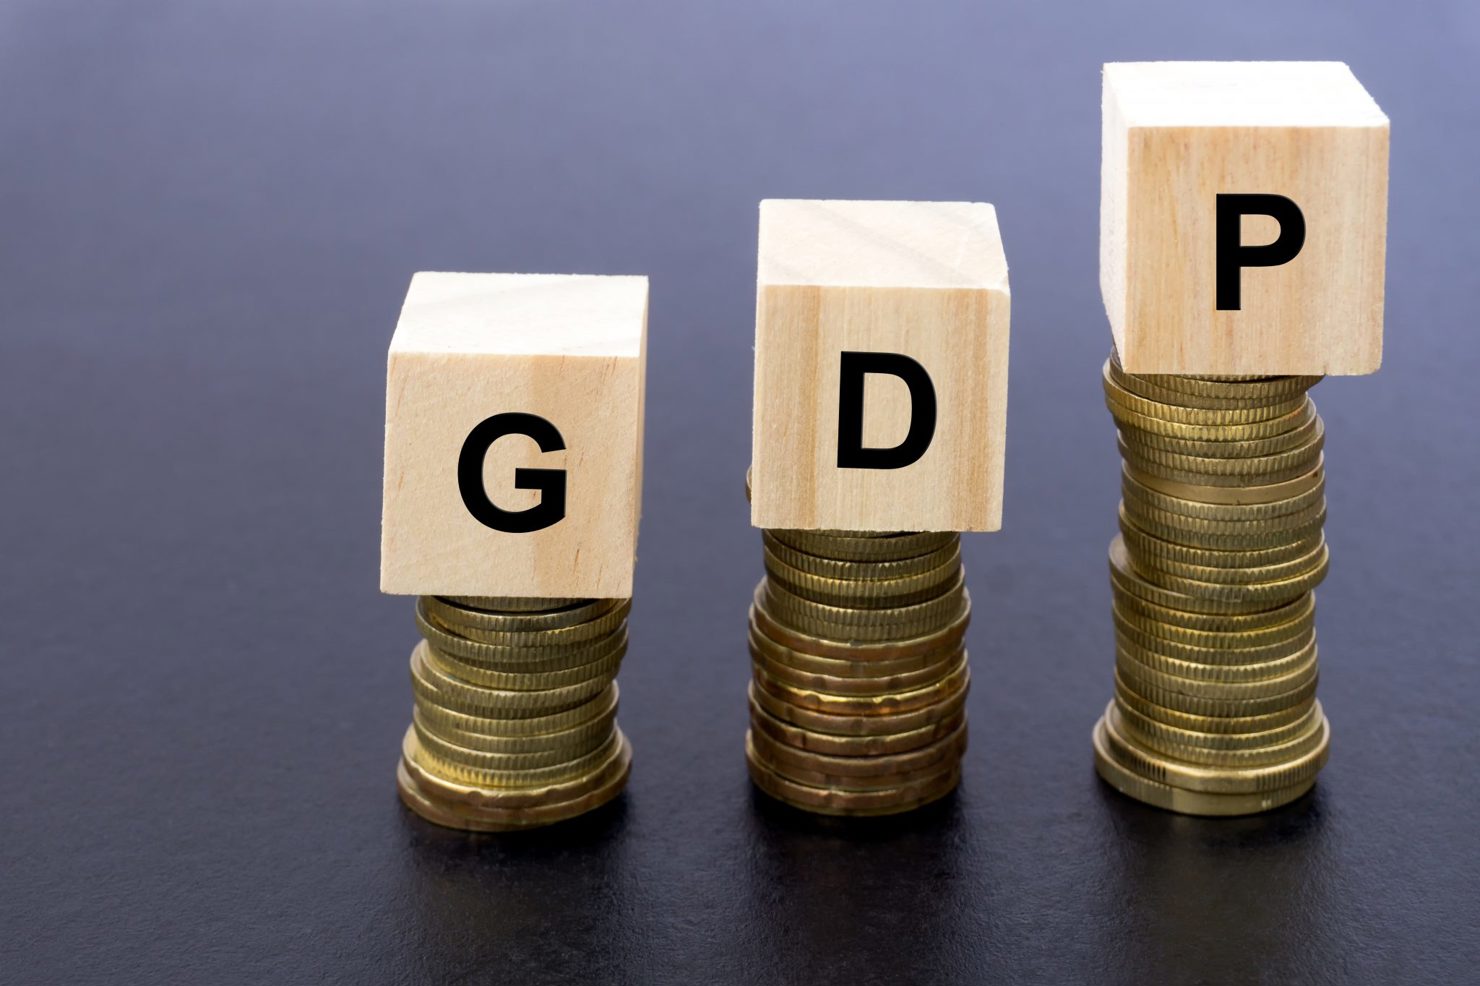 Mục tiêu tăng trưởng GDP năm 2019 được đặt ra ở mức 6,6 - 6,8%... Nguồn: internet